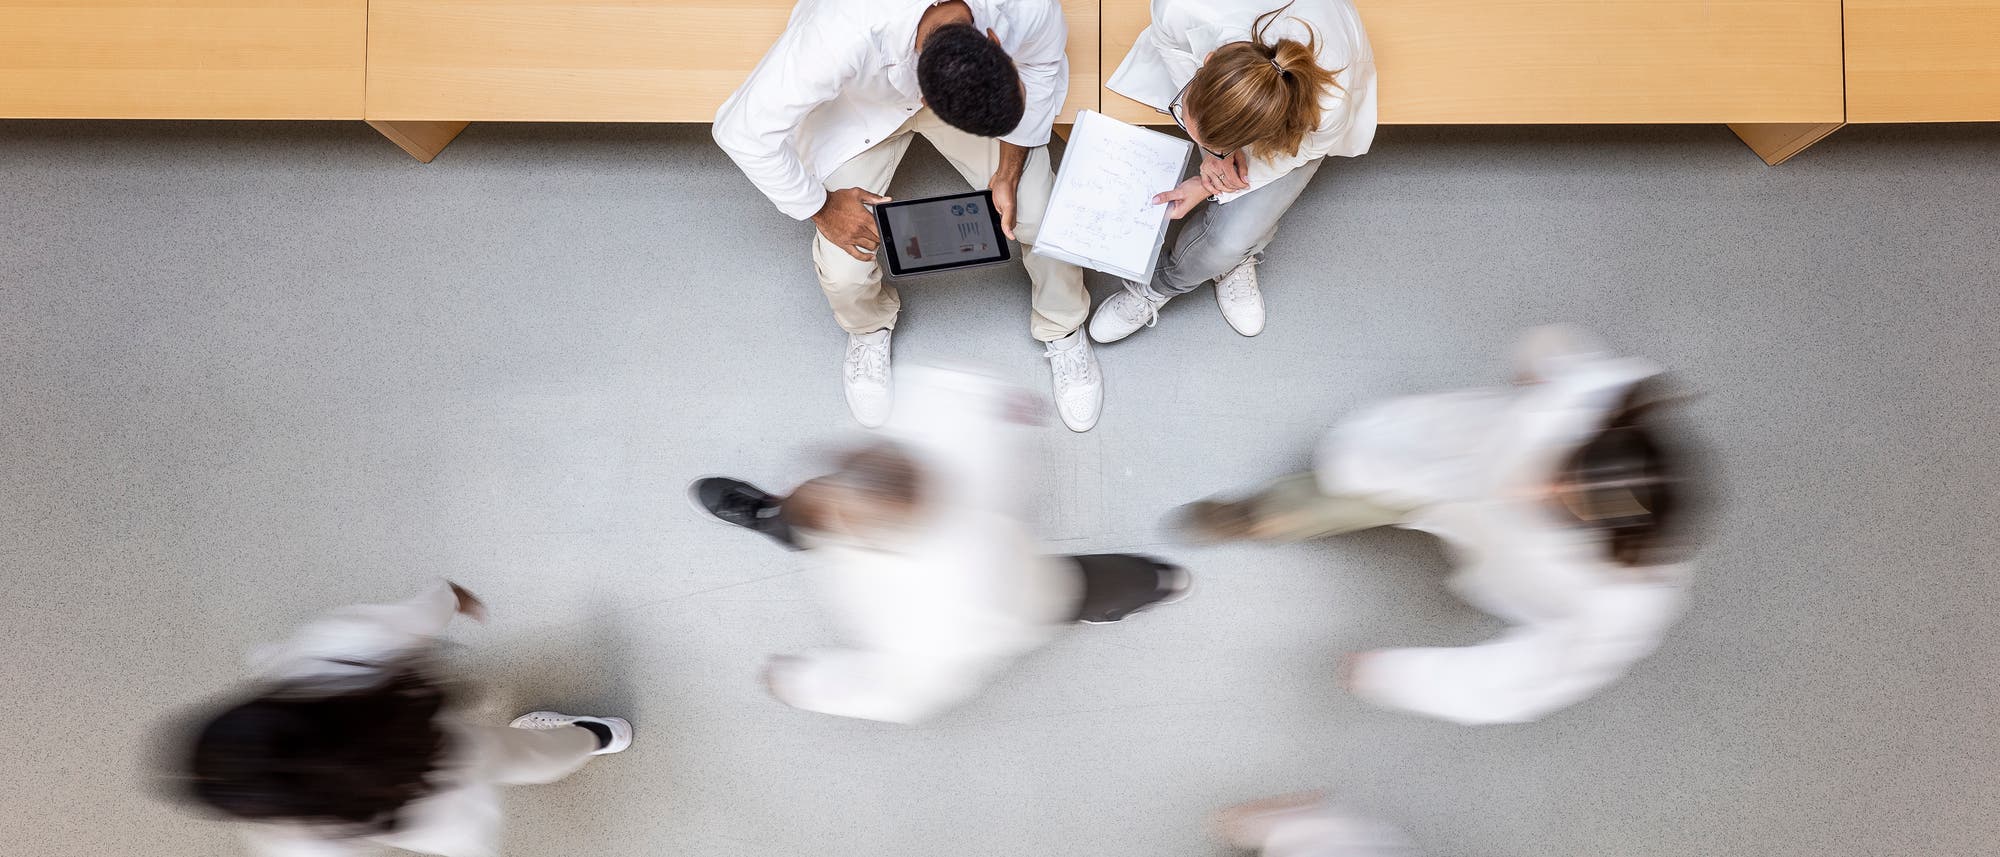 Zwei sitzende Medizinstudenten besprechen sich, andere laufen an ihnen vorbei, Blick von oben aus der Vogelperspektive